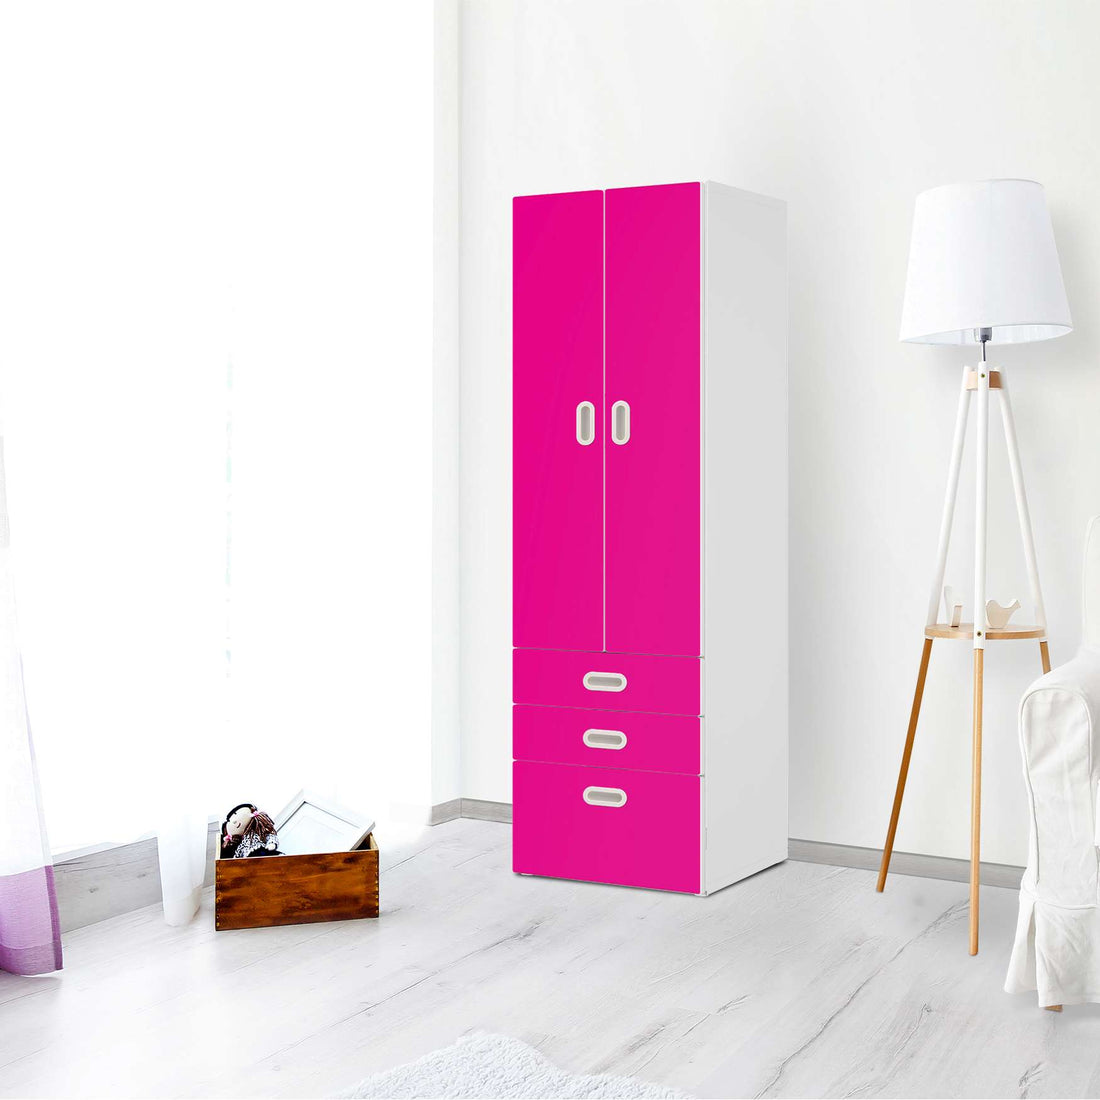 Klebefolie Pink Dark - IKEA Stuva / Fritids kombiniert - 3 Schubladen und 2 große Türen - Kinderzimmer